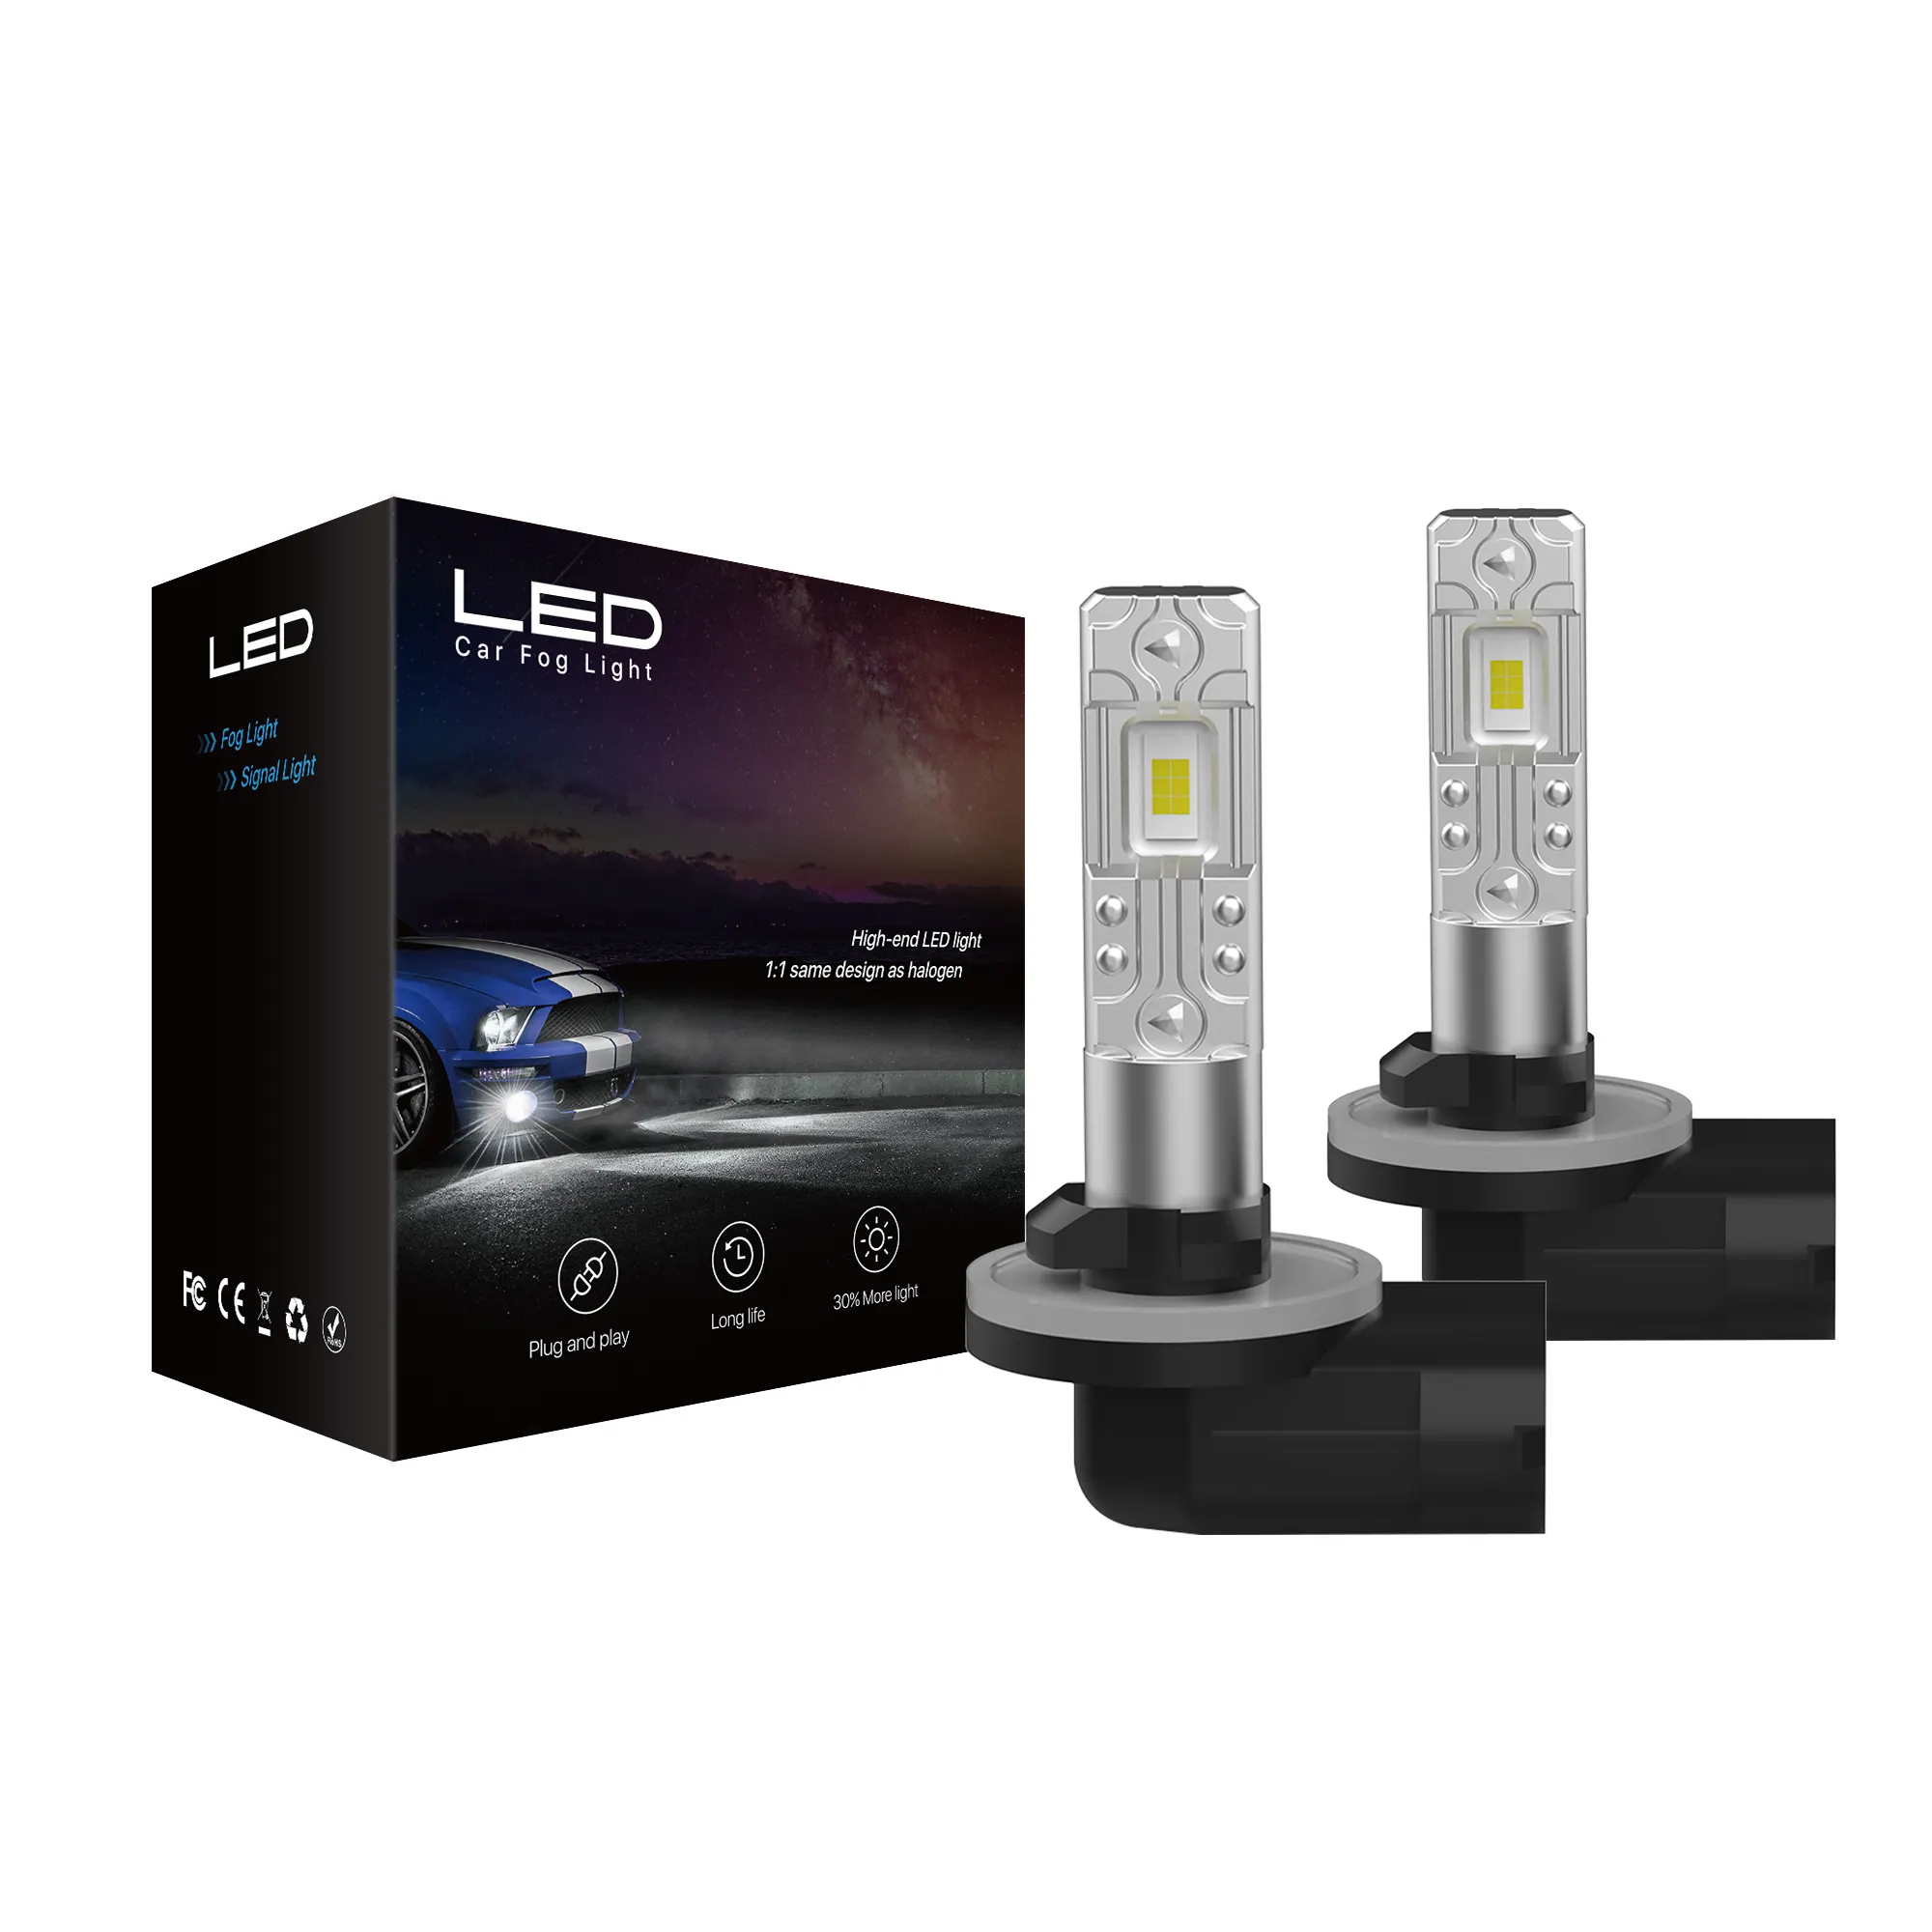 Lâmpada LED para farol de carro sem ventilador V20, preço de fábrica, 60 Watts, 4000lm, branco, 3000K, H1, H3, H7, H8, H9, Canbus, tamanho mini, iluminação automotiva